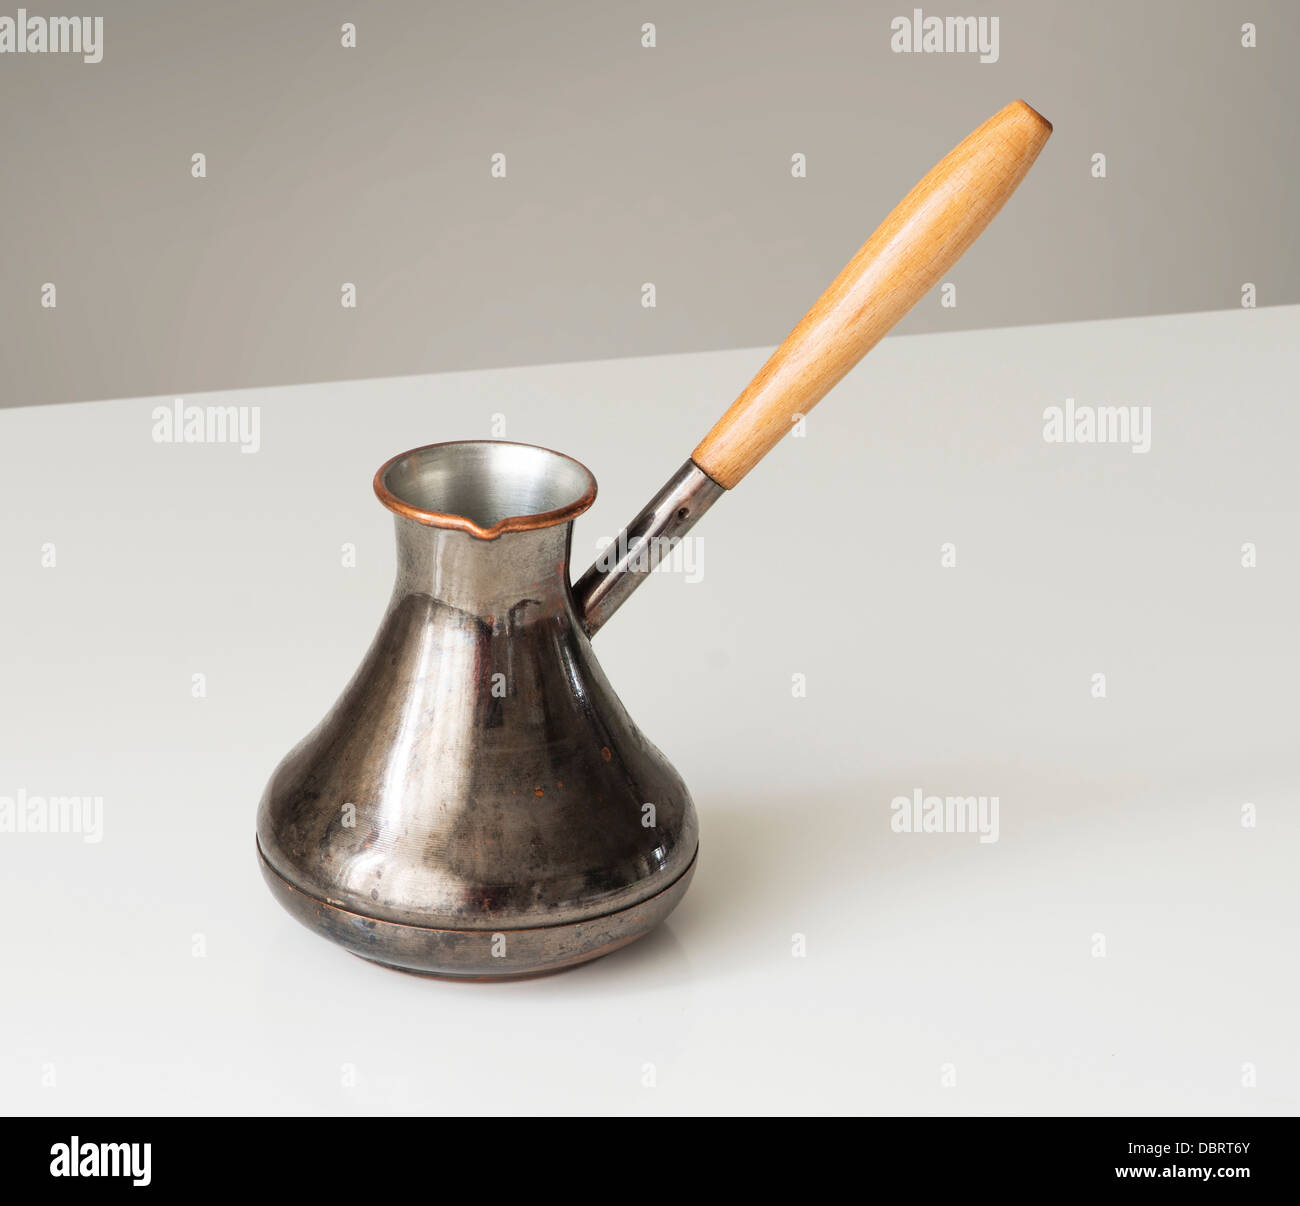 Kupfer-türkischer Kaffee-Topf auf weißen Tisch, Clipping-Pfad  Stockfotografie - Alamy